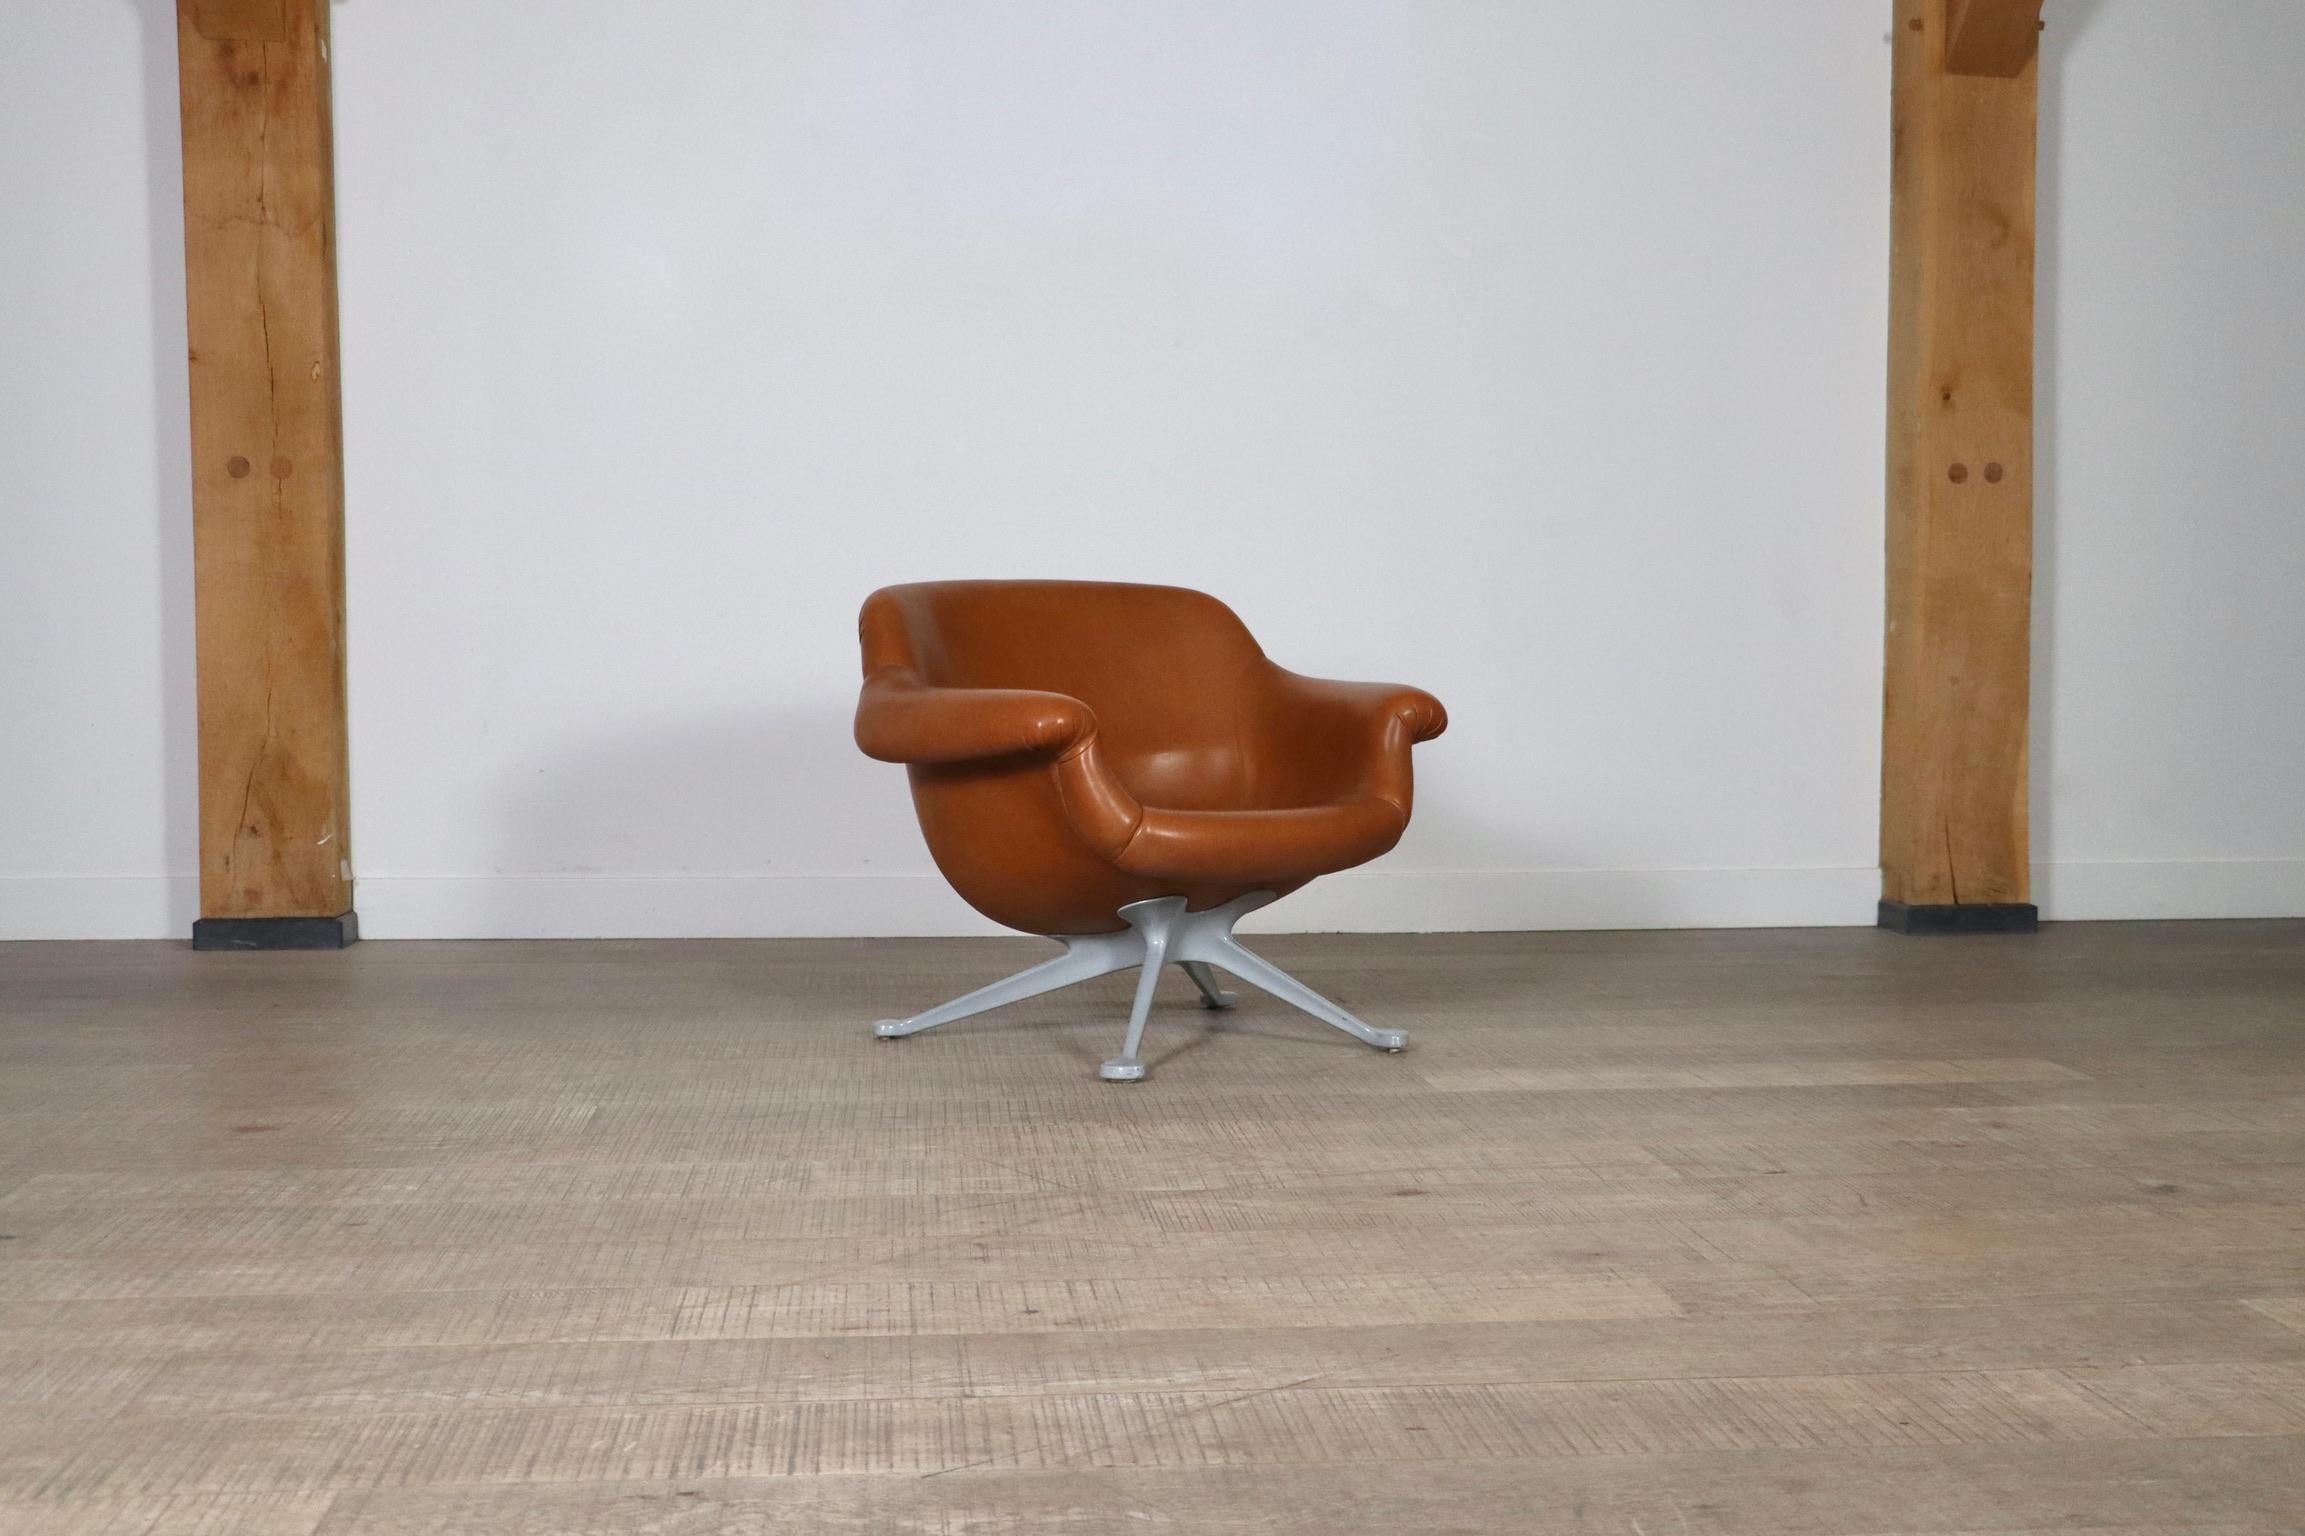 Ein sehr seltener Loungesessel, entworfen von Angelo Mangiarotti, hergestellt von Cassina in Italien, um 1960. Dieses Modell, Nr. 1110, ist extrem schwer zu finden und absolut atemberaubendes Design. Der Stuhl hat ein hochwertiges graues